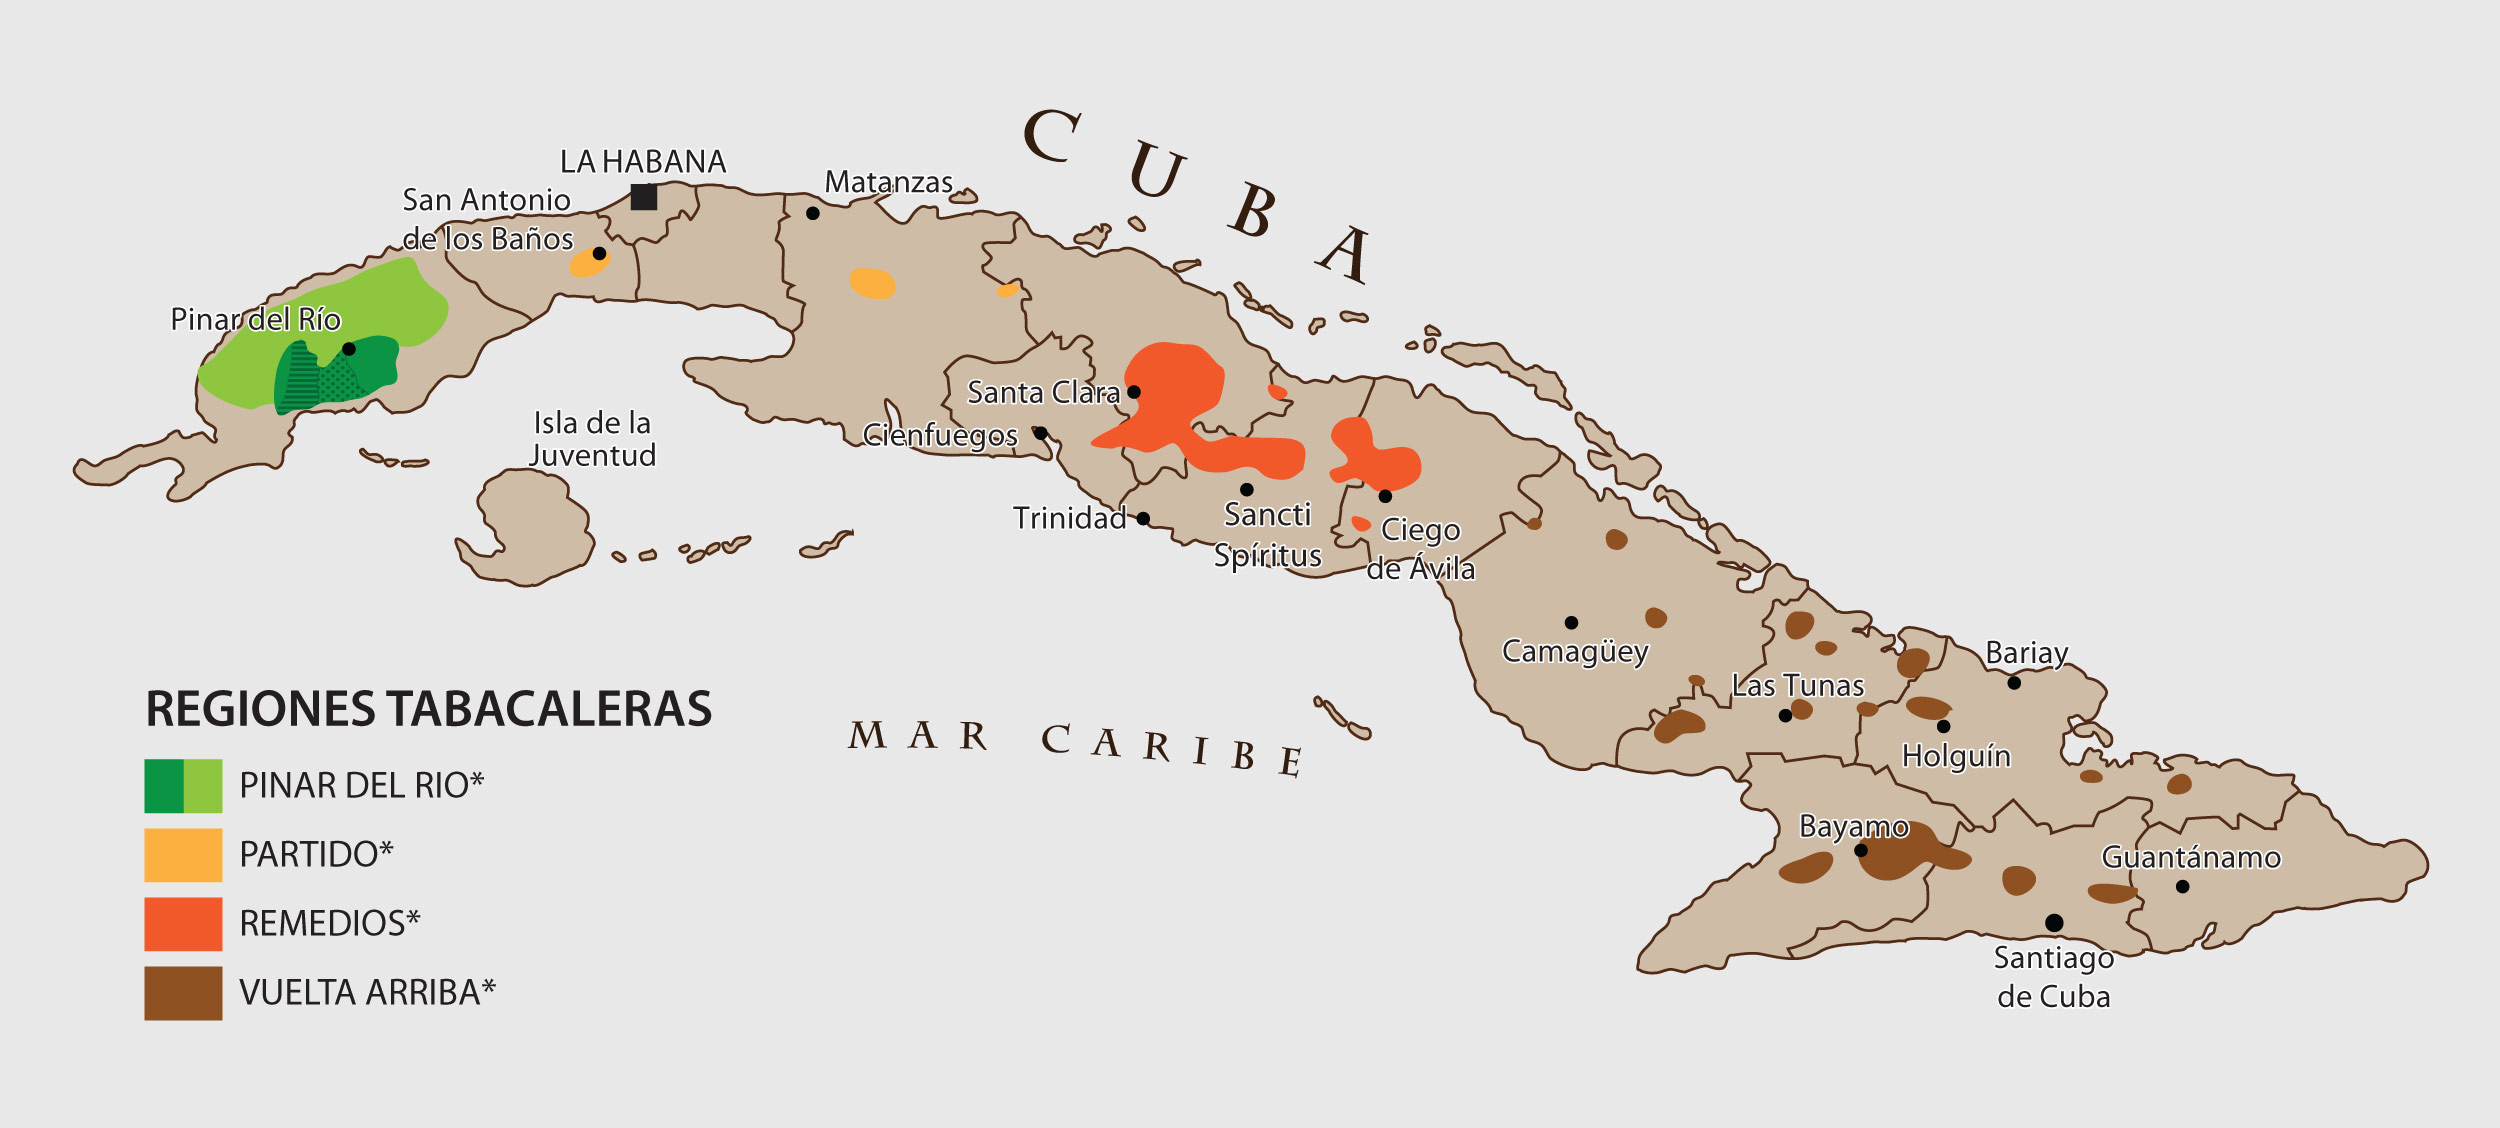 Cuba produce todas las hojas de tabaco utilizadas para elaborar sus famosos  cigarros puros Habanos, los mejores del mundo